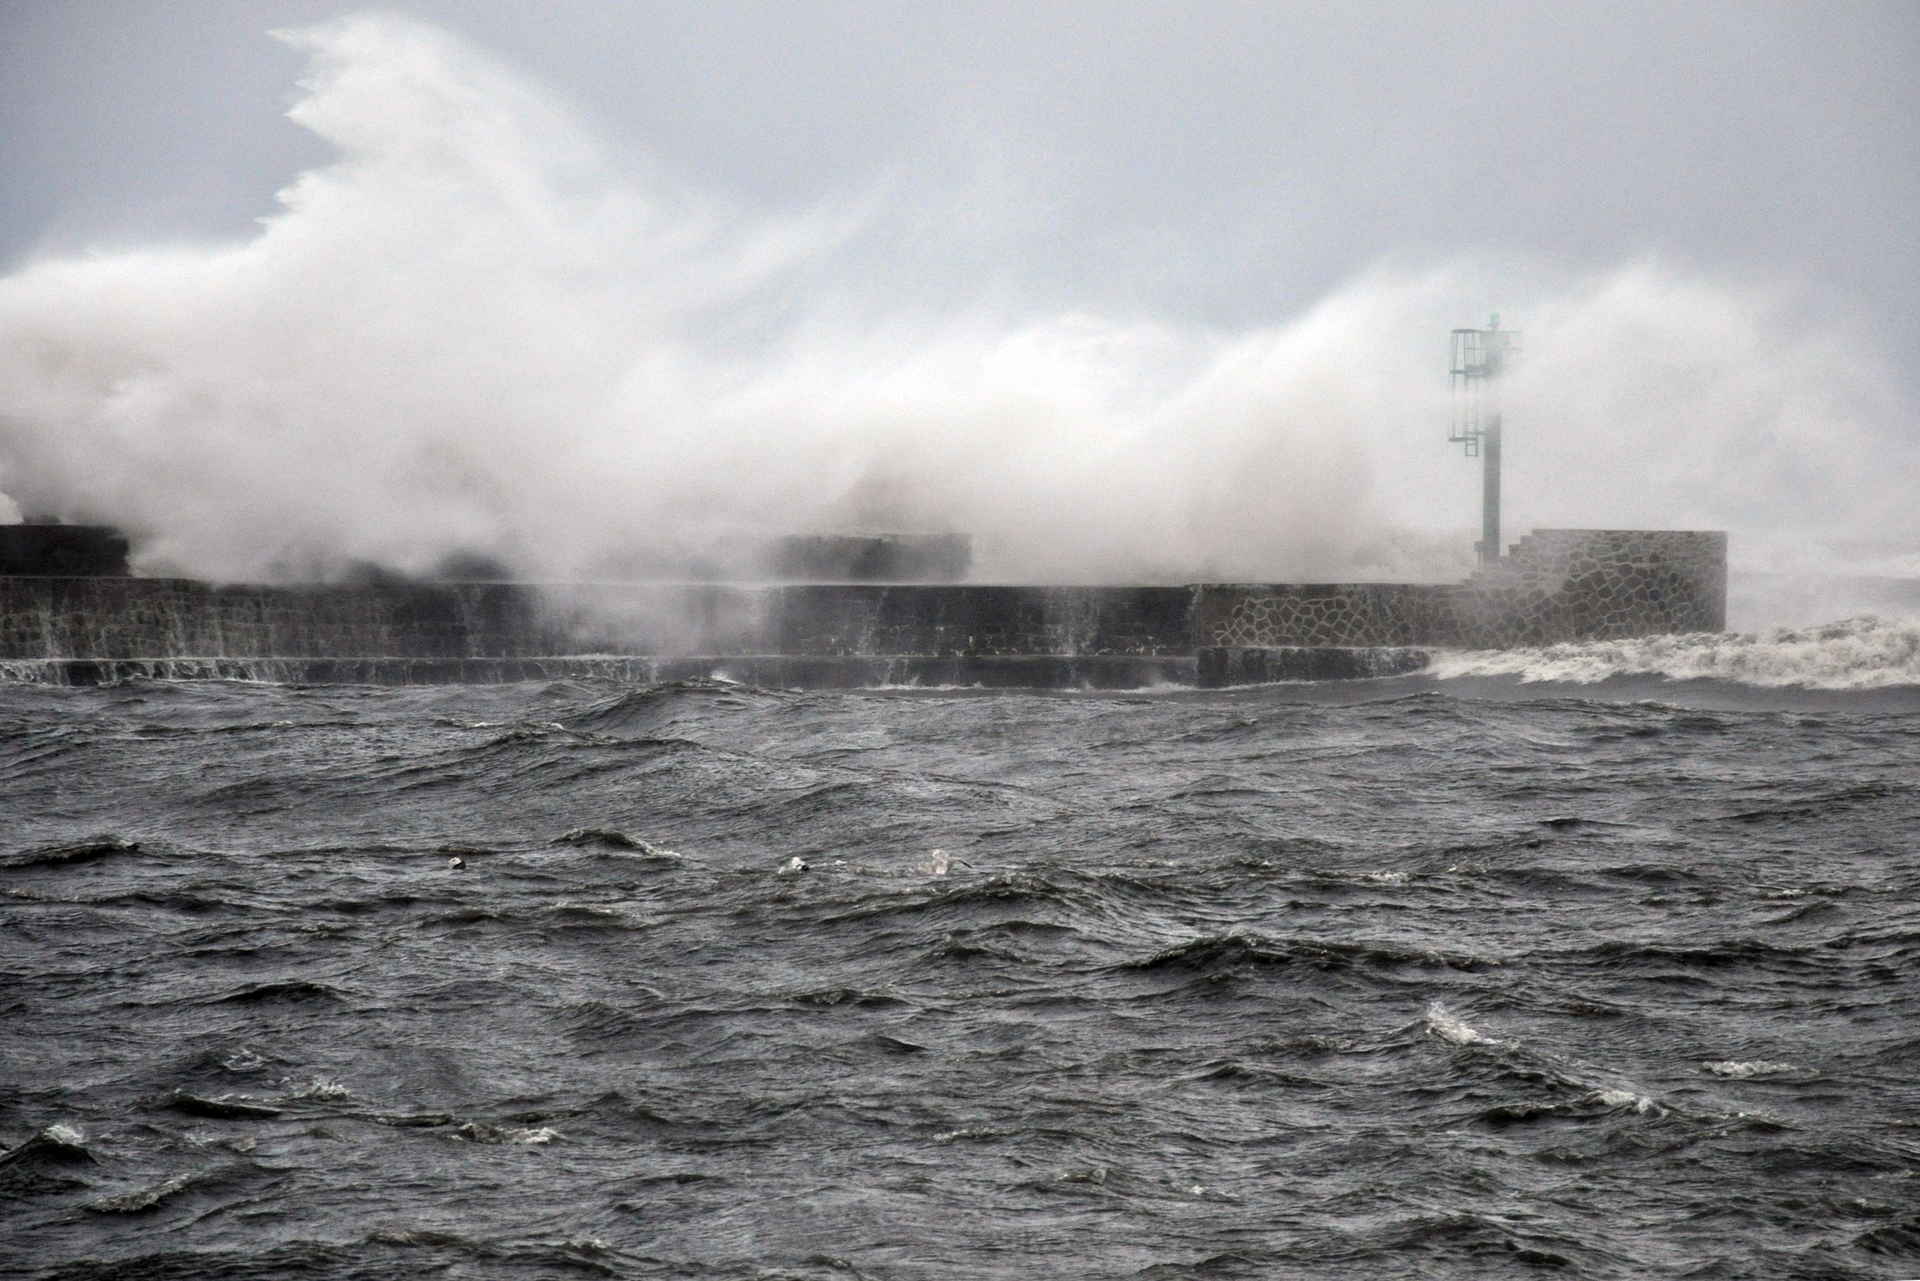 Fotografia prezentuje wygląd wybrzeża morskiego podczas huraganu. Widoczne wzburzone morze oraz fale rozbryzgujące się o molo.